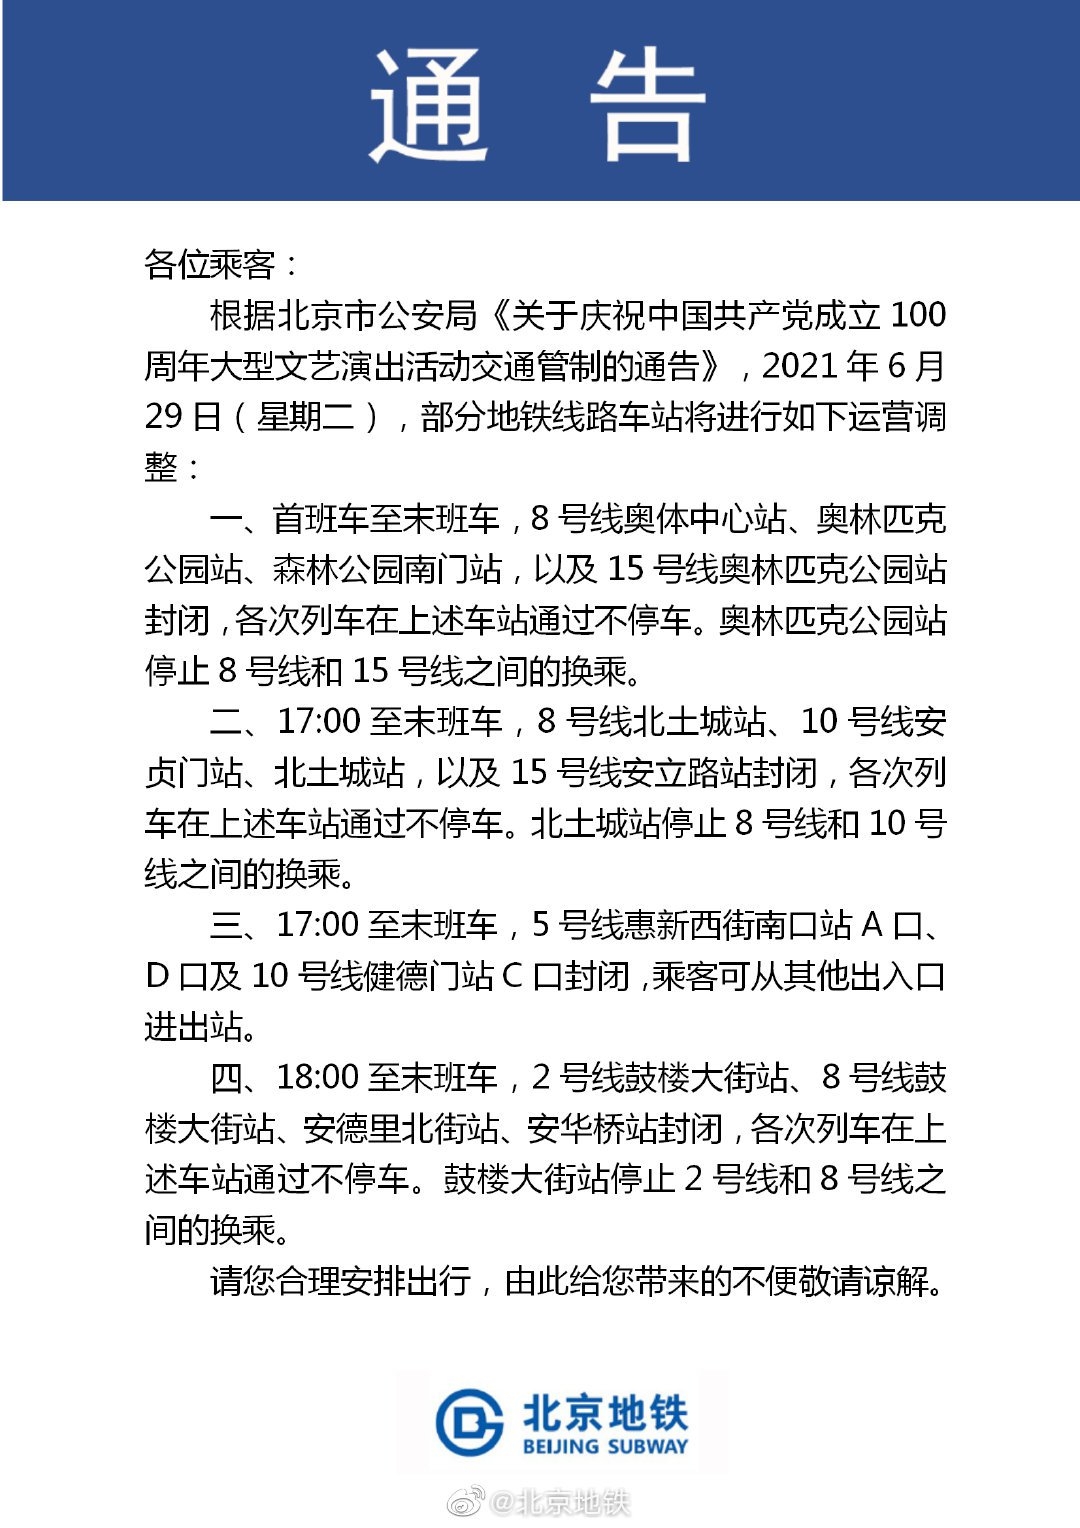 2021年6月29日北京地铁封站调整公告